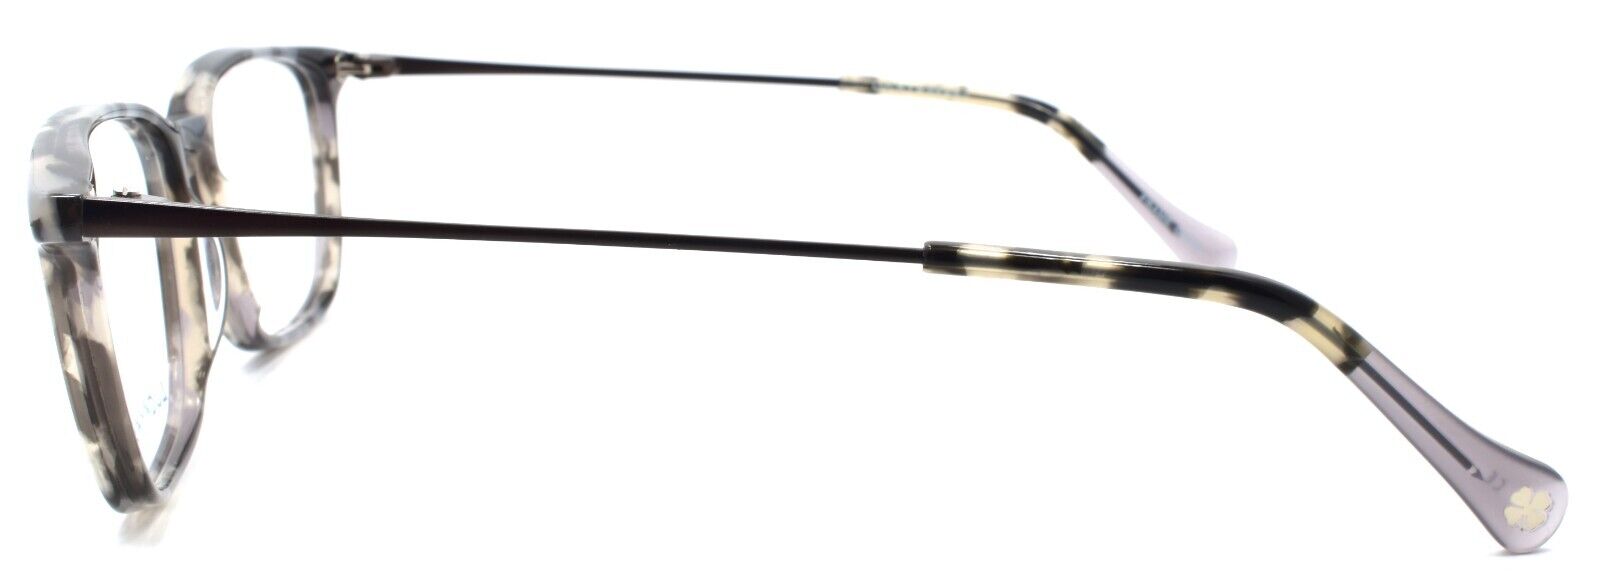 3-LUCKY BRAND D407 Men's Eyeglasses Frames 53-17-140 Grey Tortoise-751286316445-IKSpecs